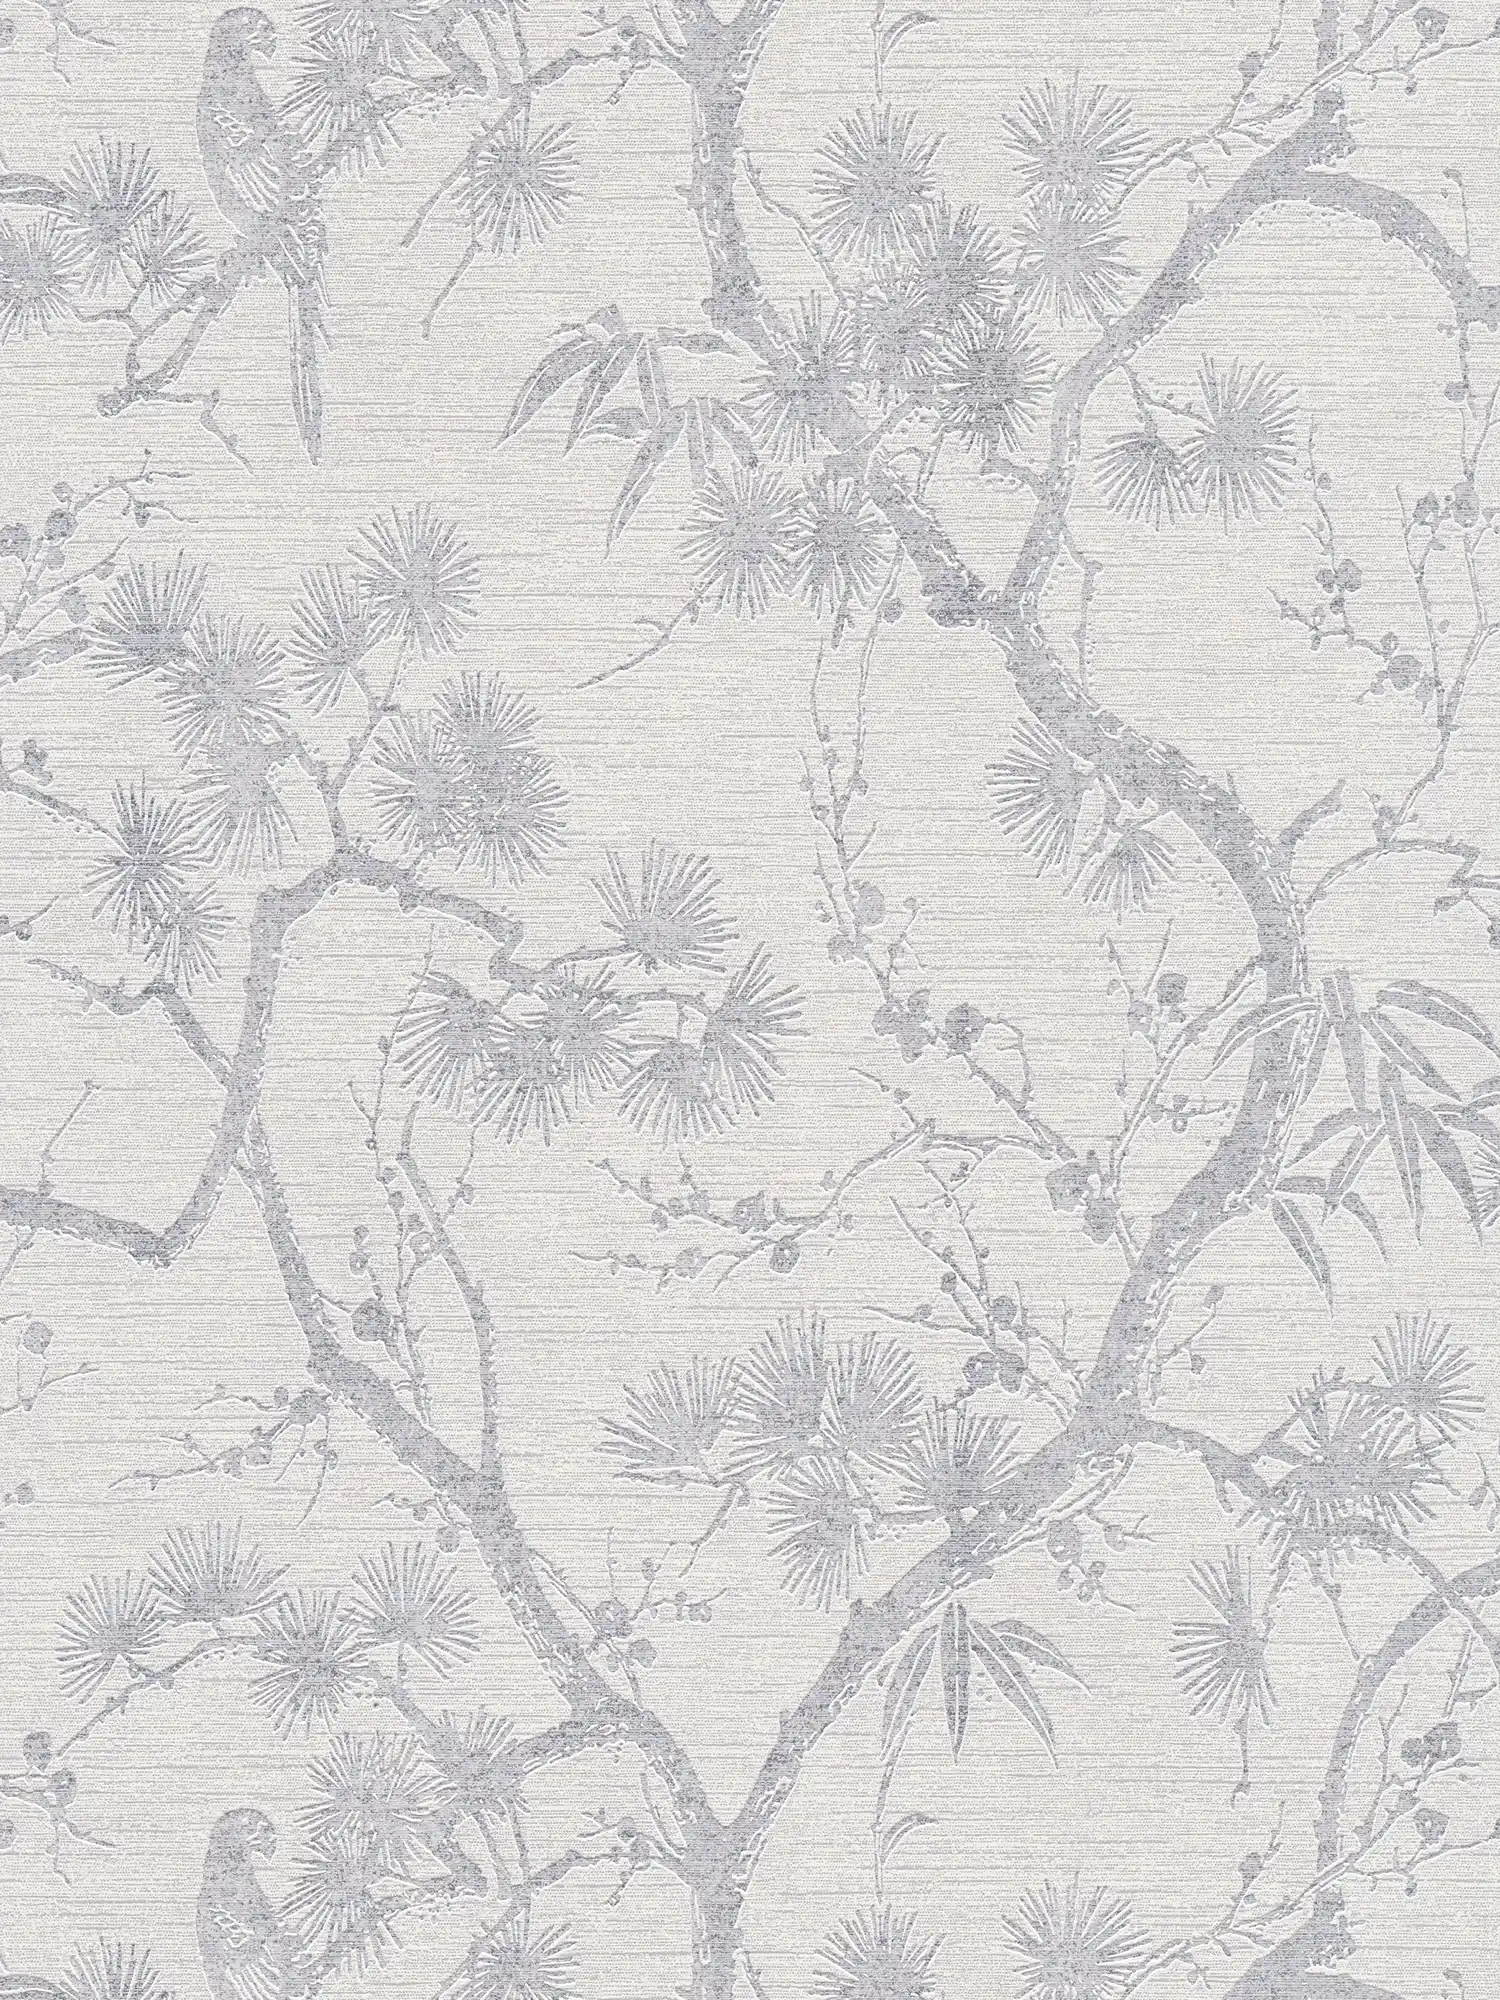         Tapete mit natürlichem Design im Asia Style – Grau, Metallic, Weiß
    